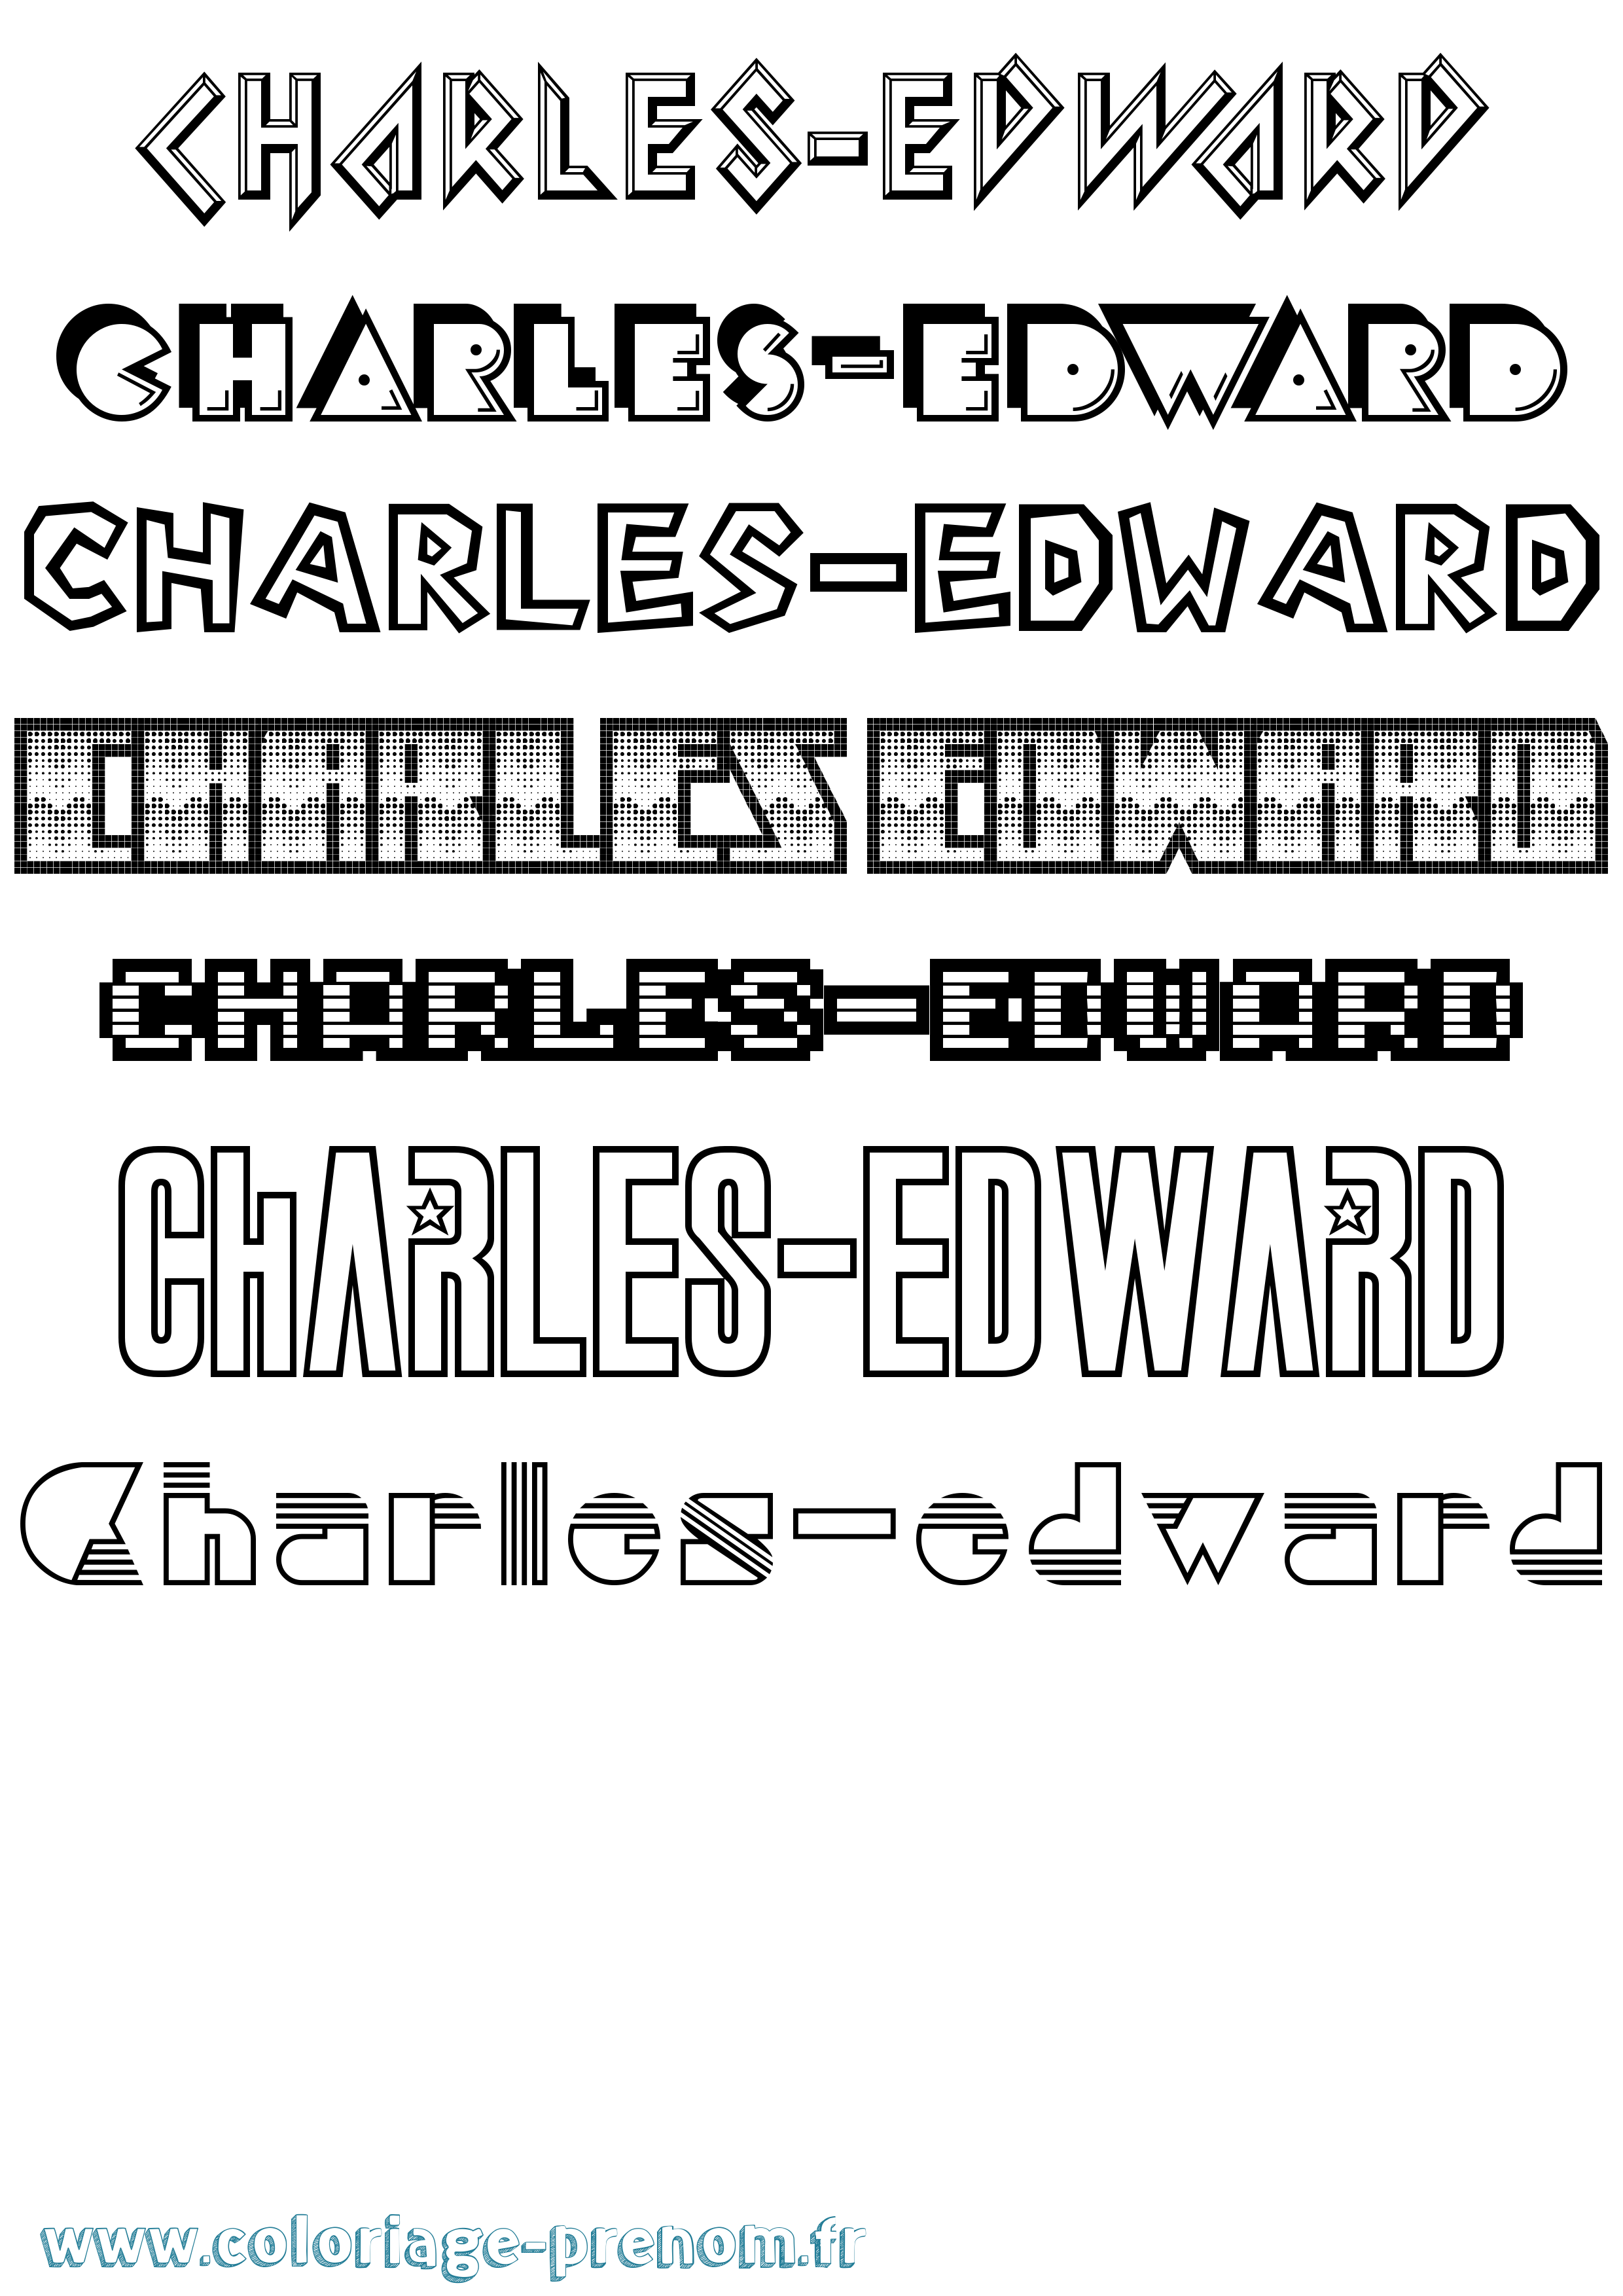 Coloriage prénom Charles-Edward Jeux Vidéos